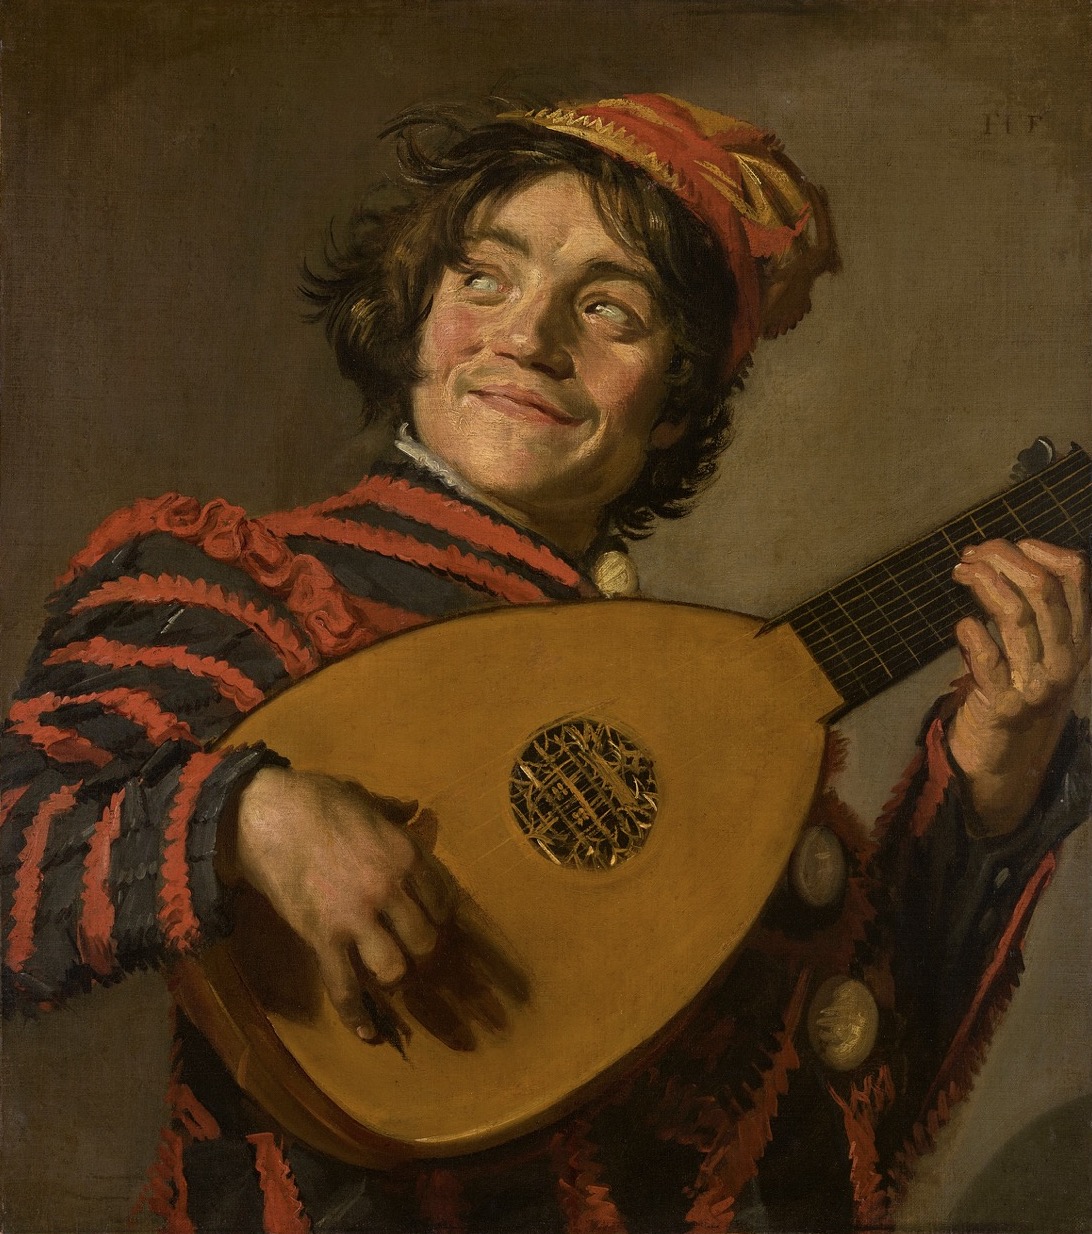 Traicionado por sus sonrisas: Frans Hals en la National Gallery